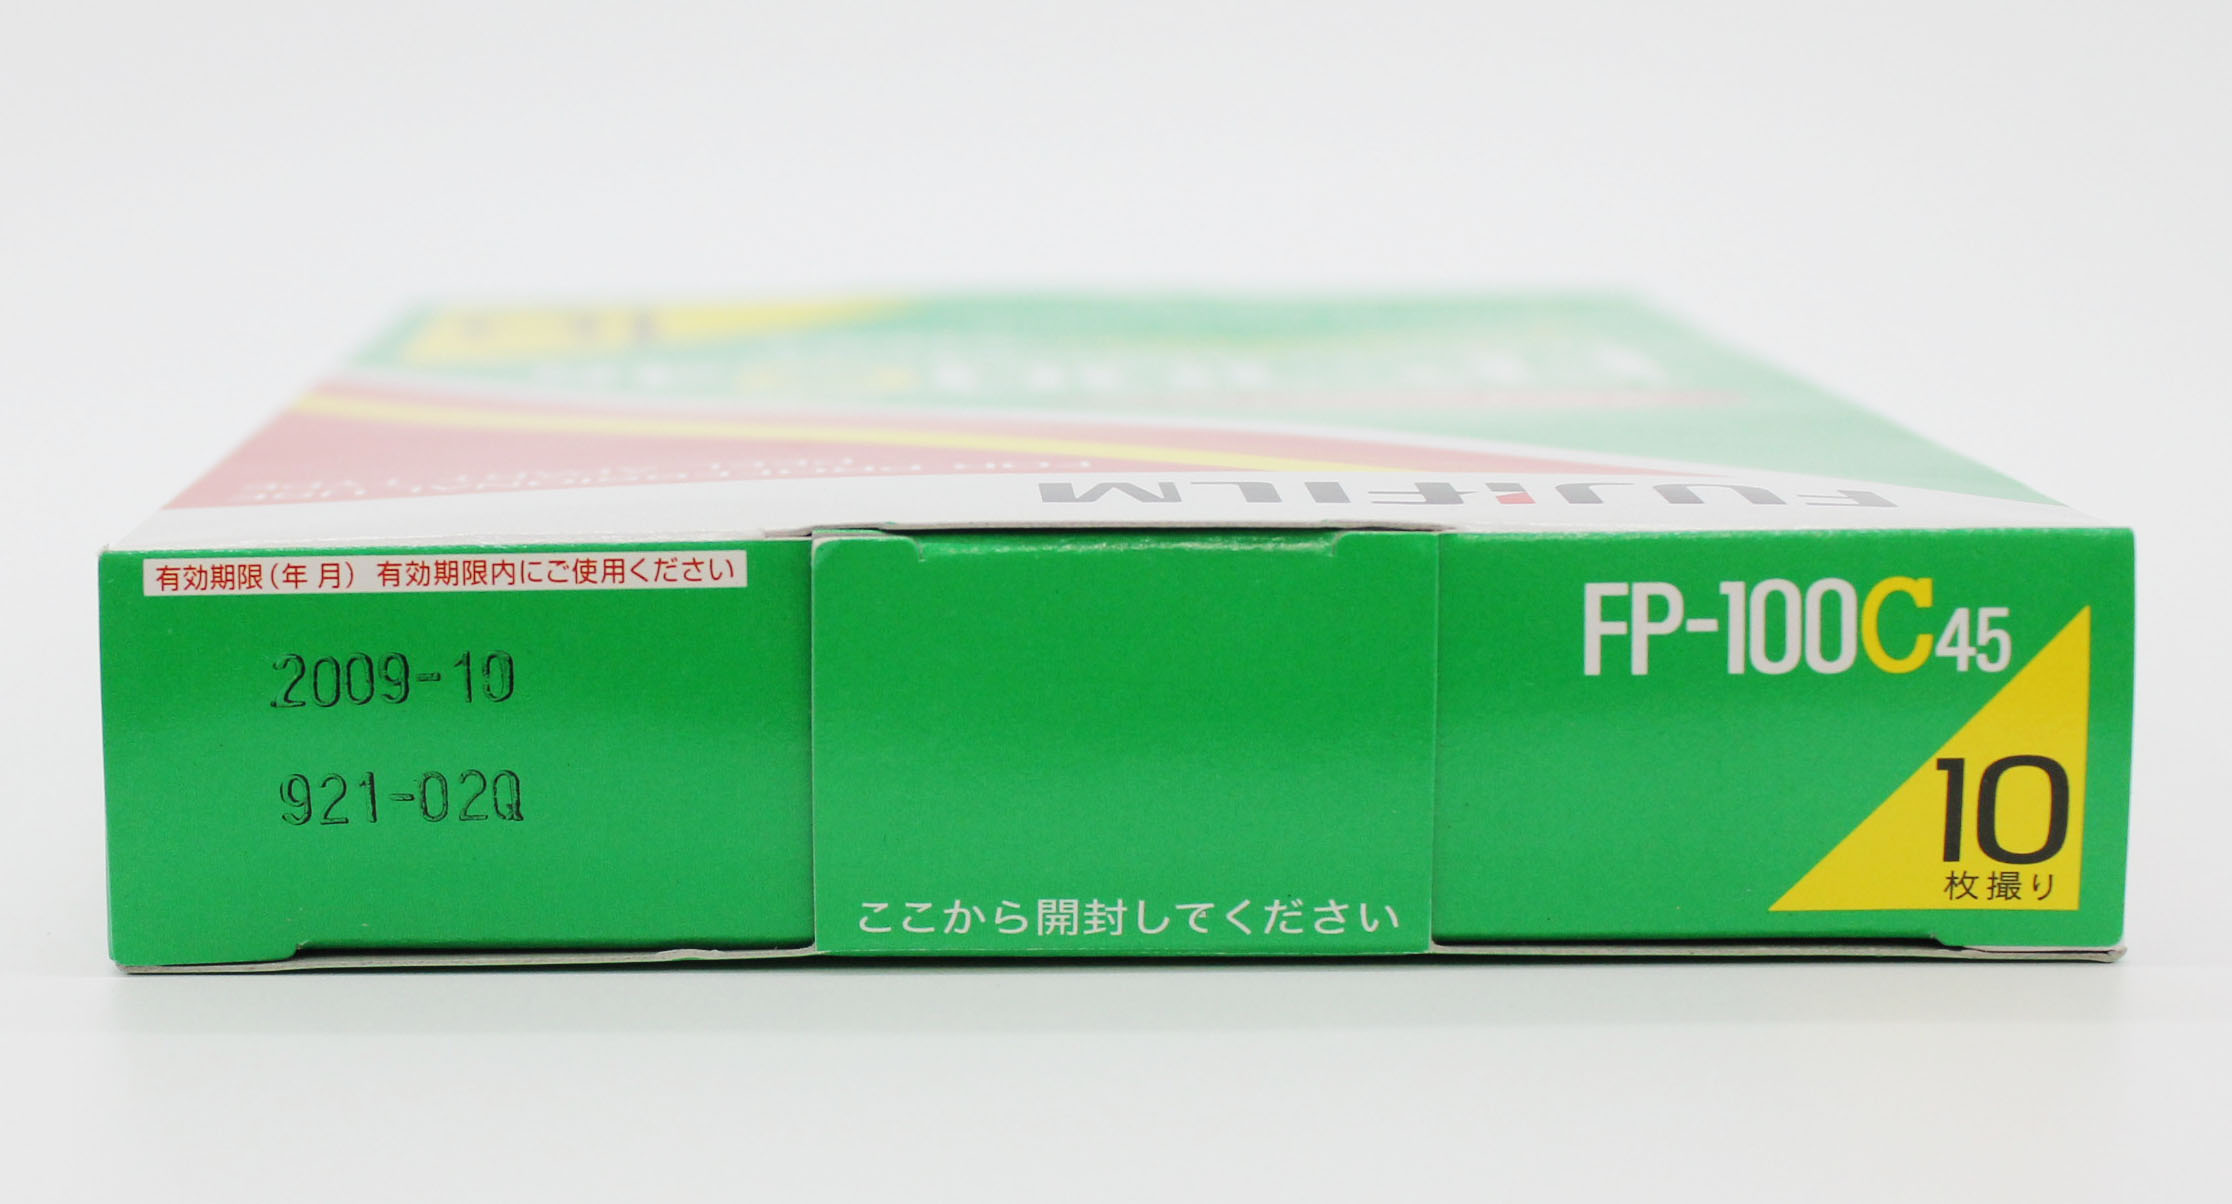  Fuji Fujifilm FP-100C45 4x5 8.9x11.8cm Instant Color Film (EXP 10/2009) Photo 3